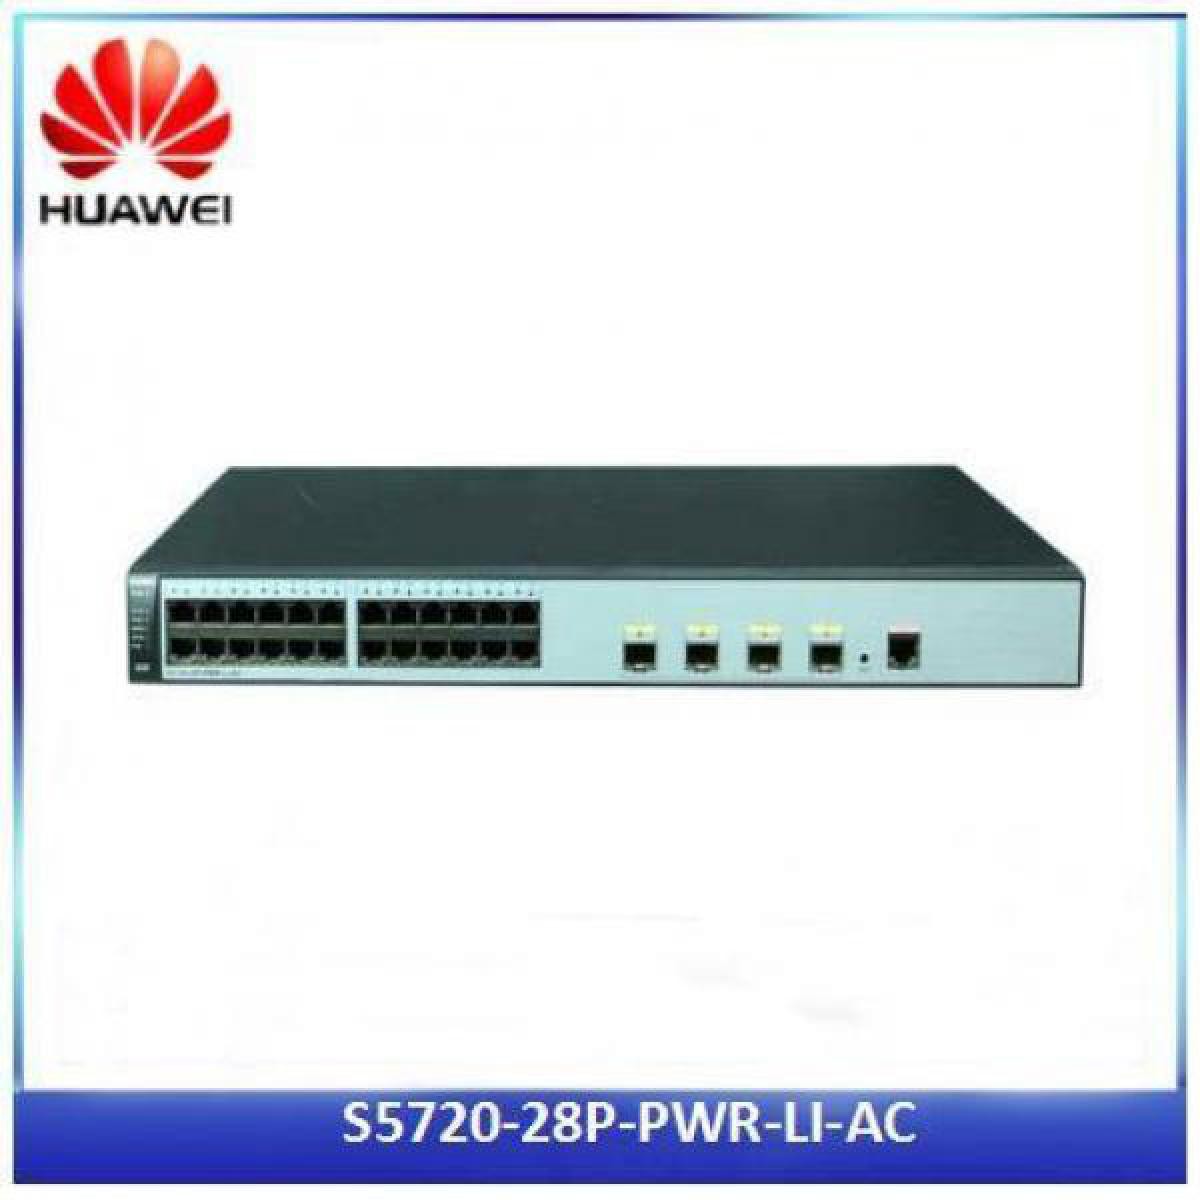 Huawei - S5720-28p-pwr-li-ac - Bracelet connecté